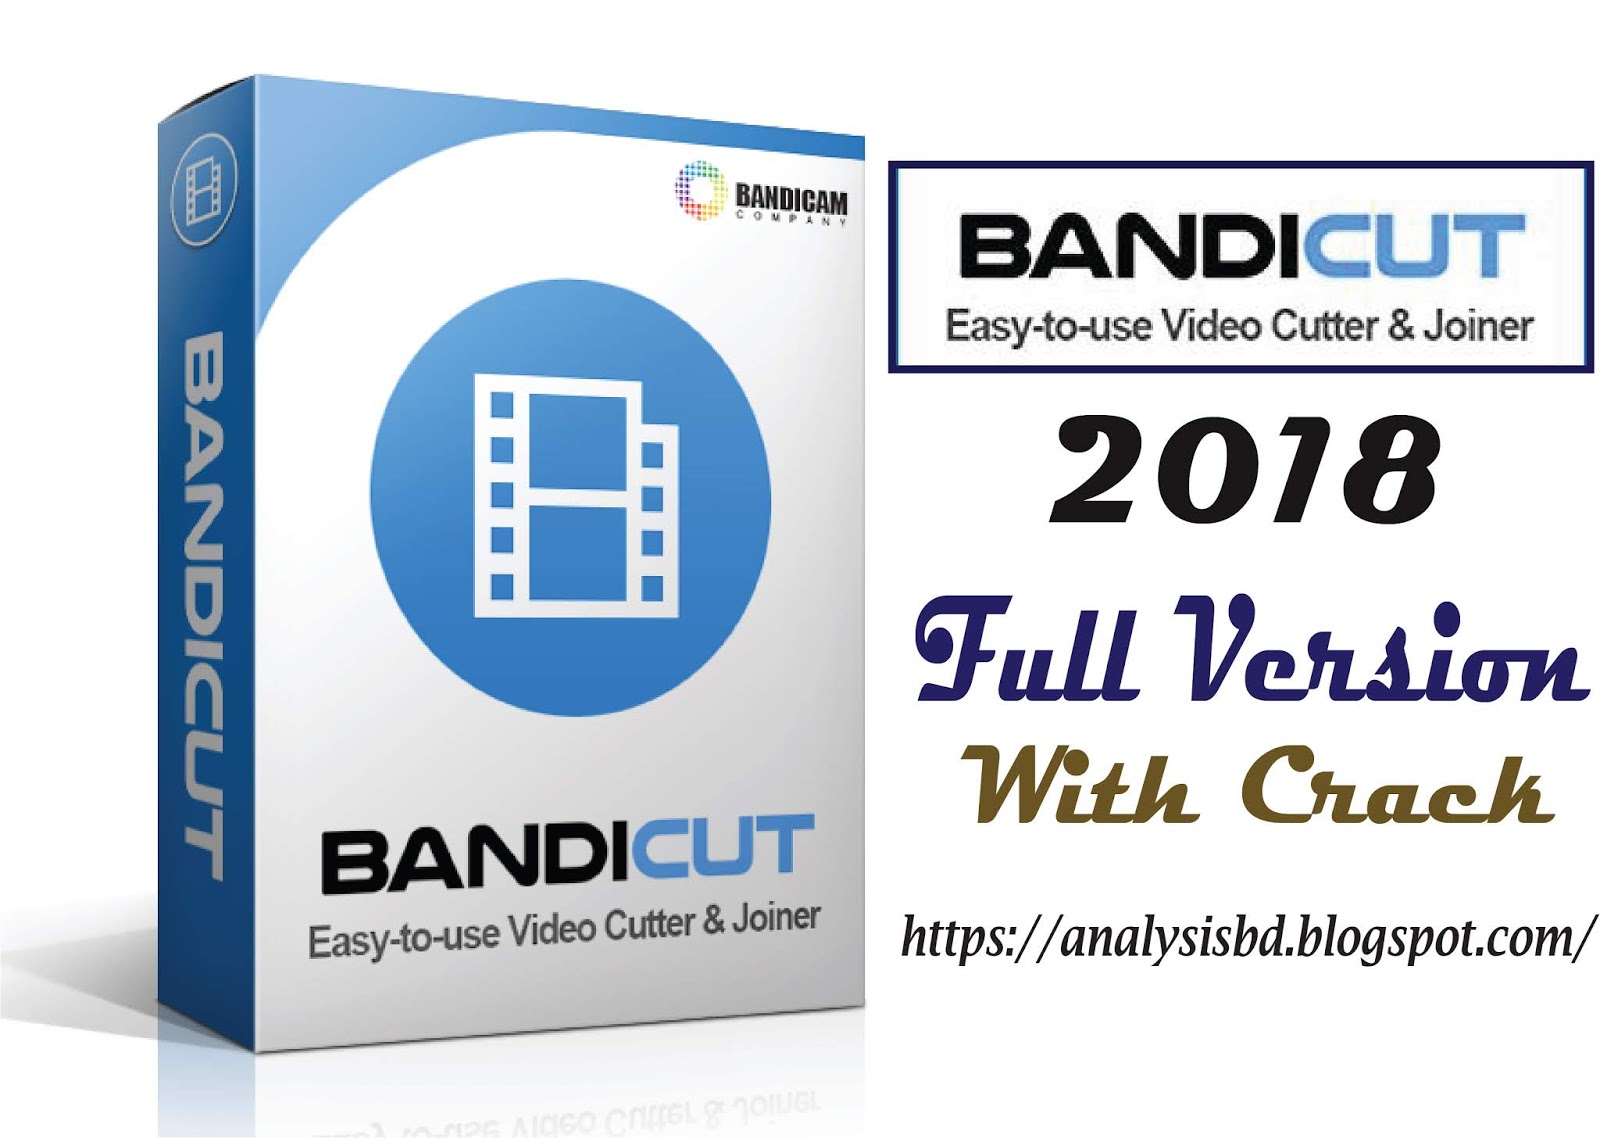 Bandicut 3.1.3 Full Crack